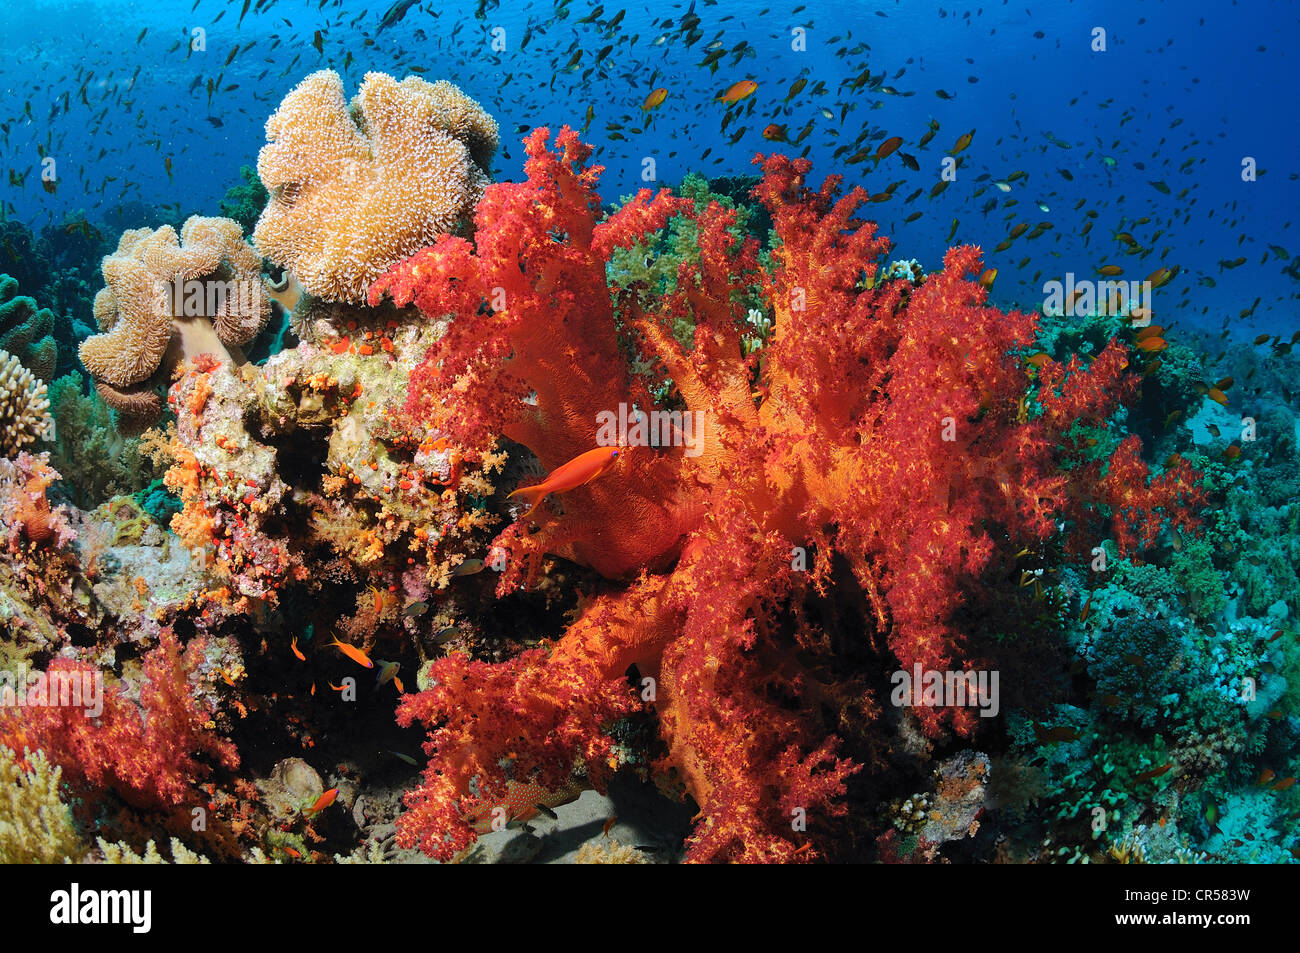 Corallo di mare immagini e fotografie stock ad alta risoluzione - Alamy